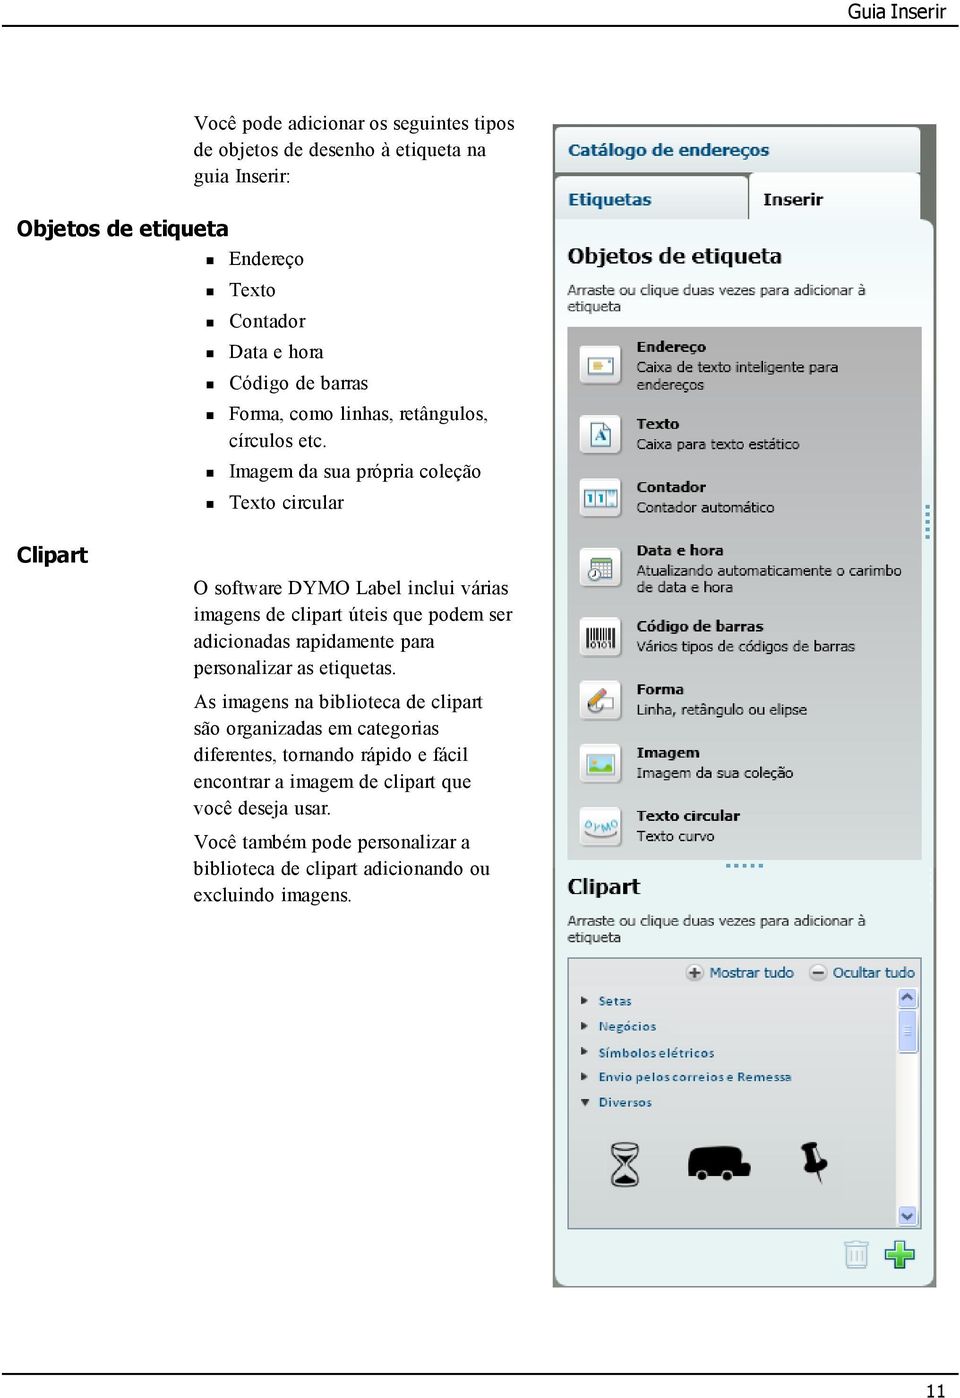 Imagem da sua própria coleção Texto circular Clipart O software DYMO Label inclui várias imagens de clipart úteis que podem ser adicionadas rapidamente para